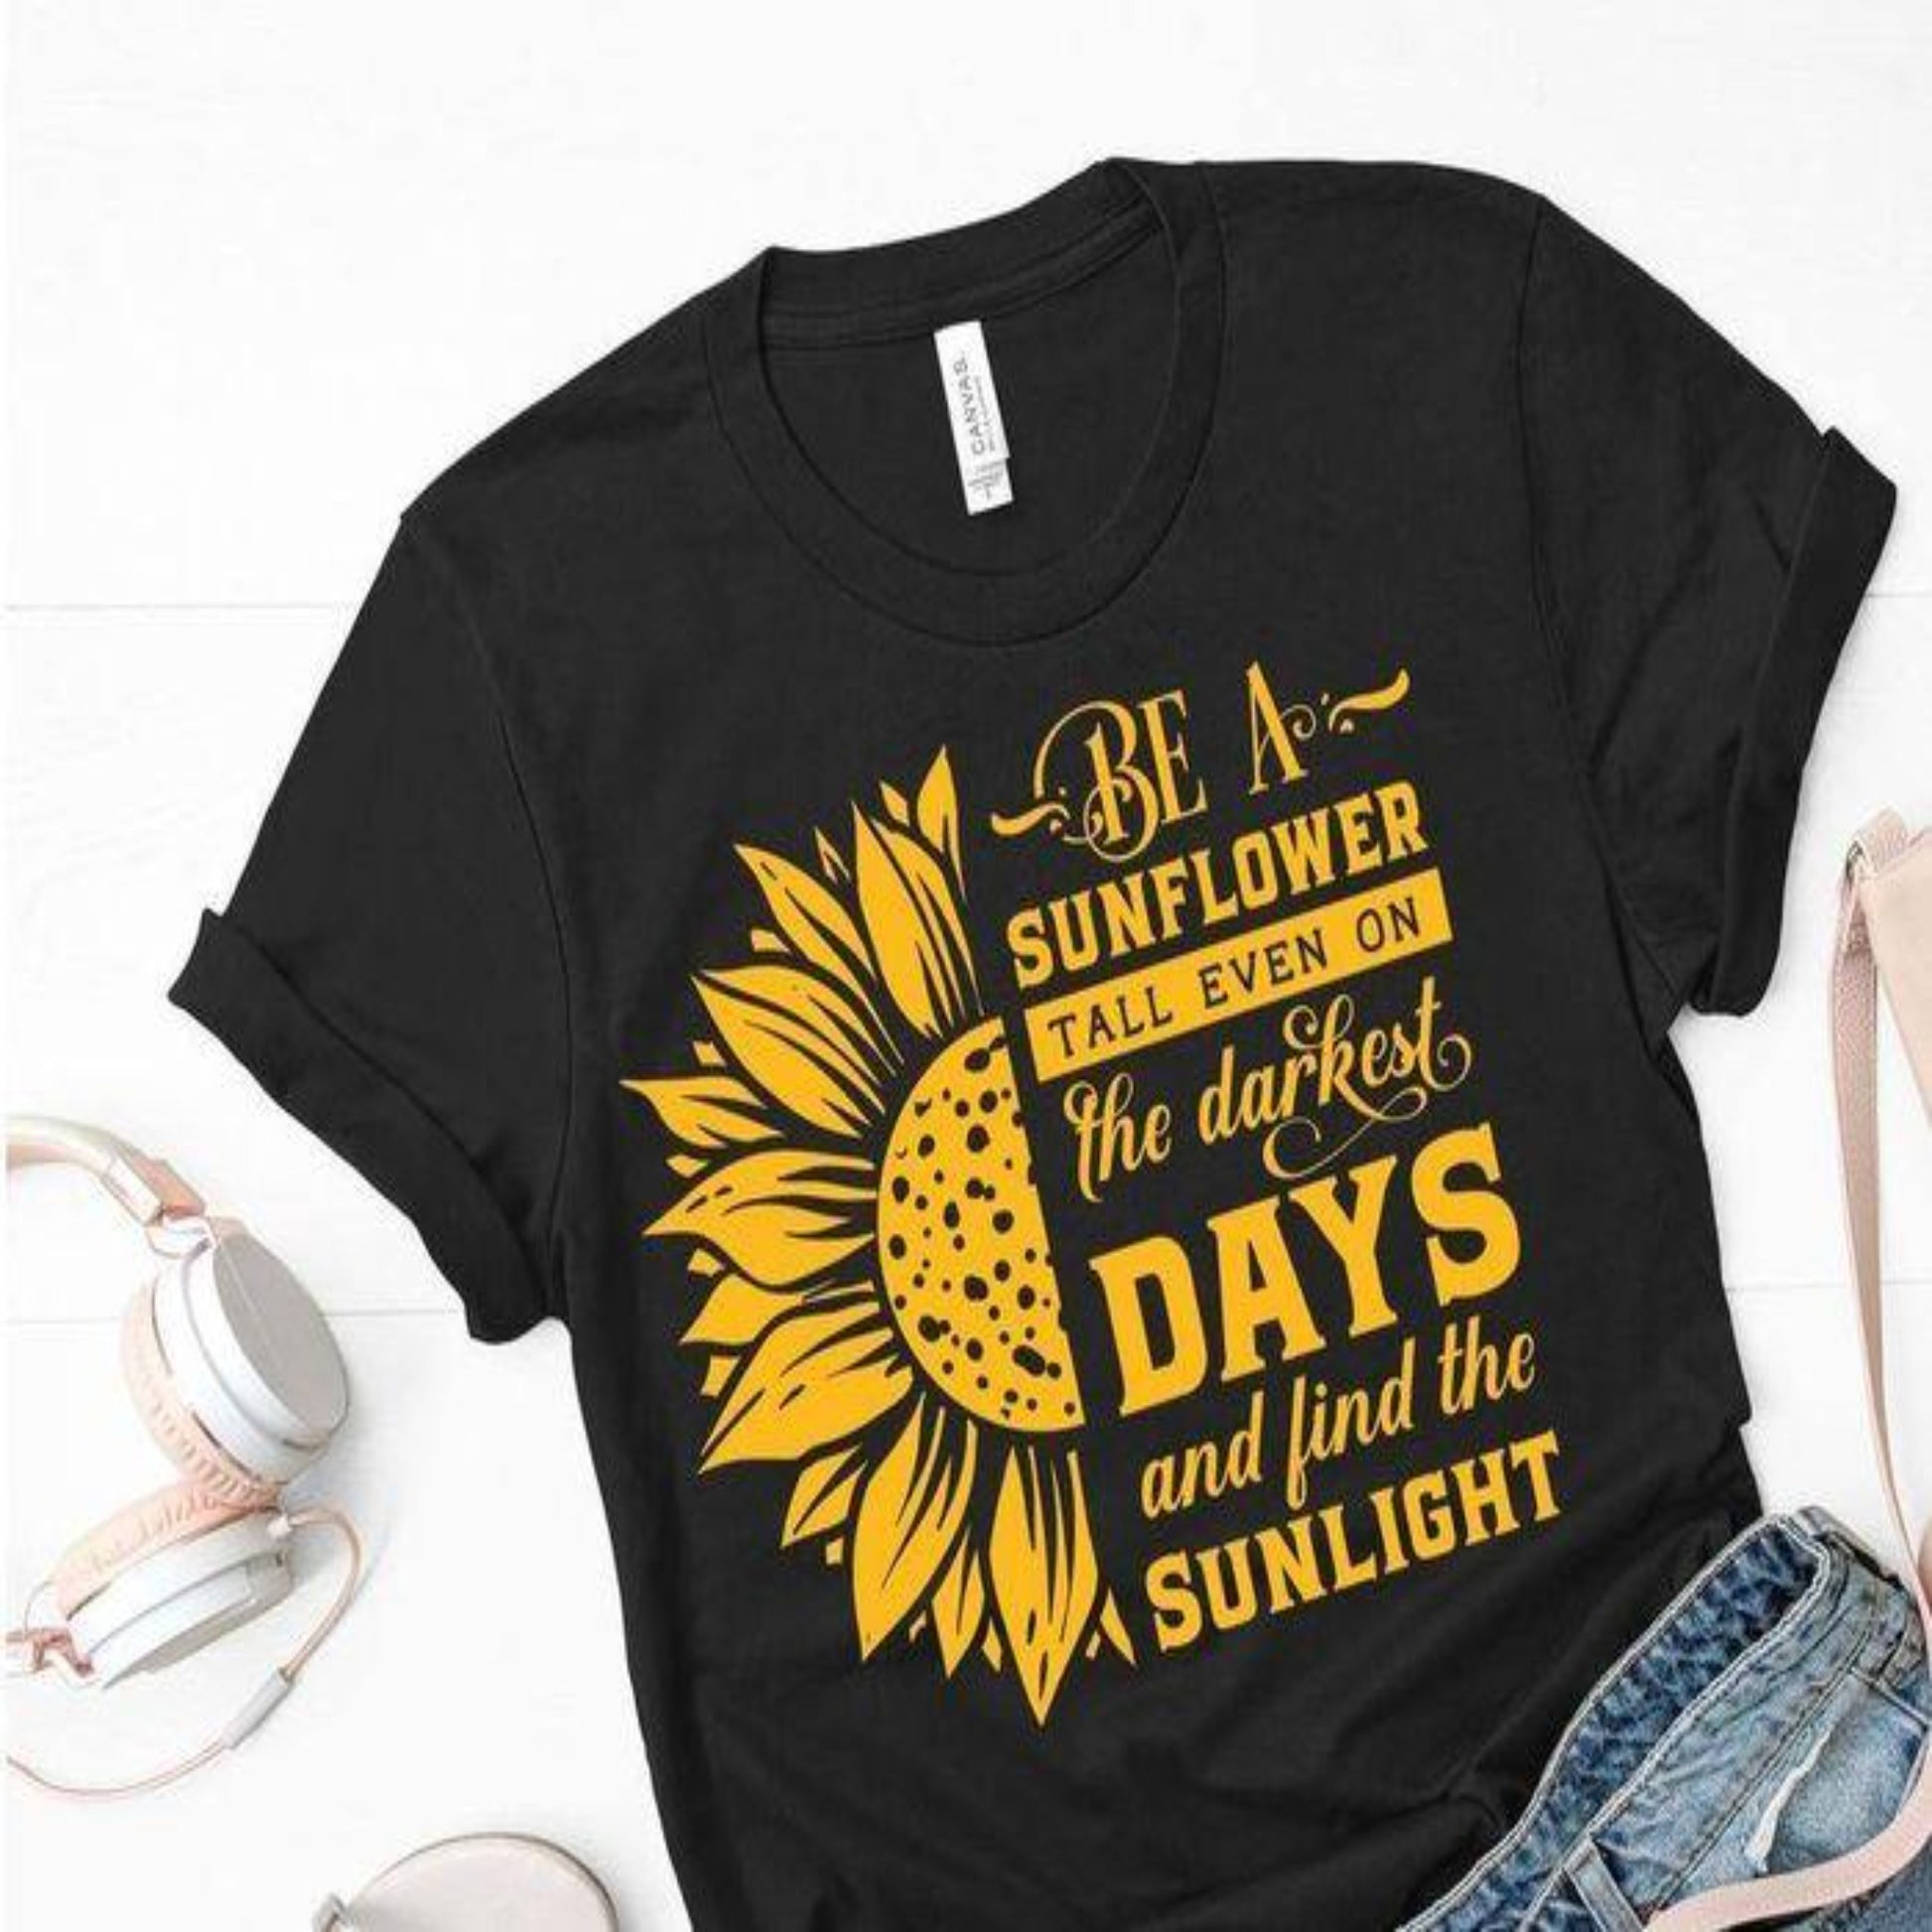 sunflower_sunlight specialty tee soft casual tshirt motivational shirt